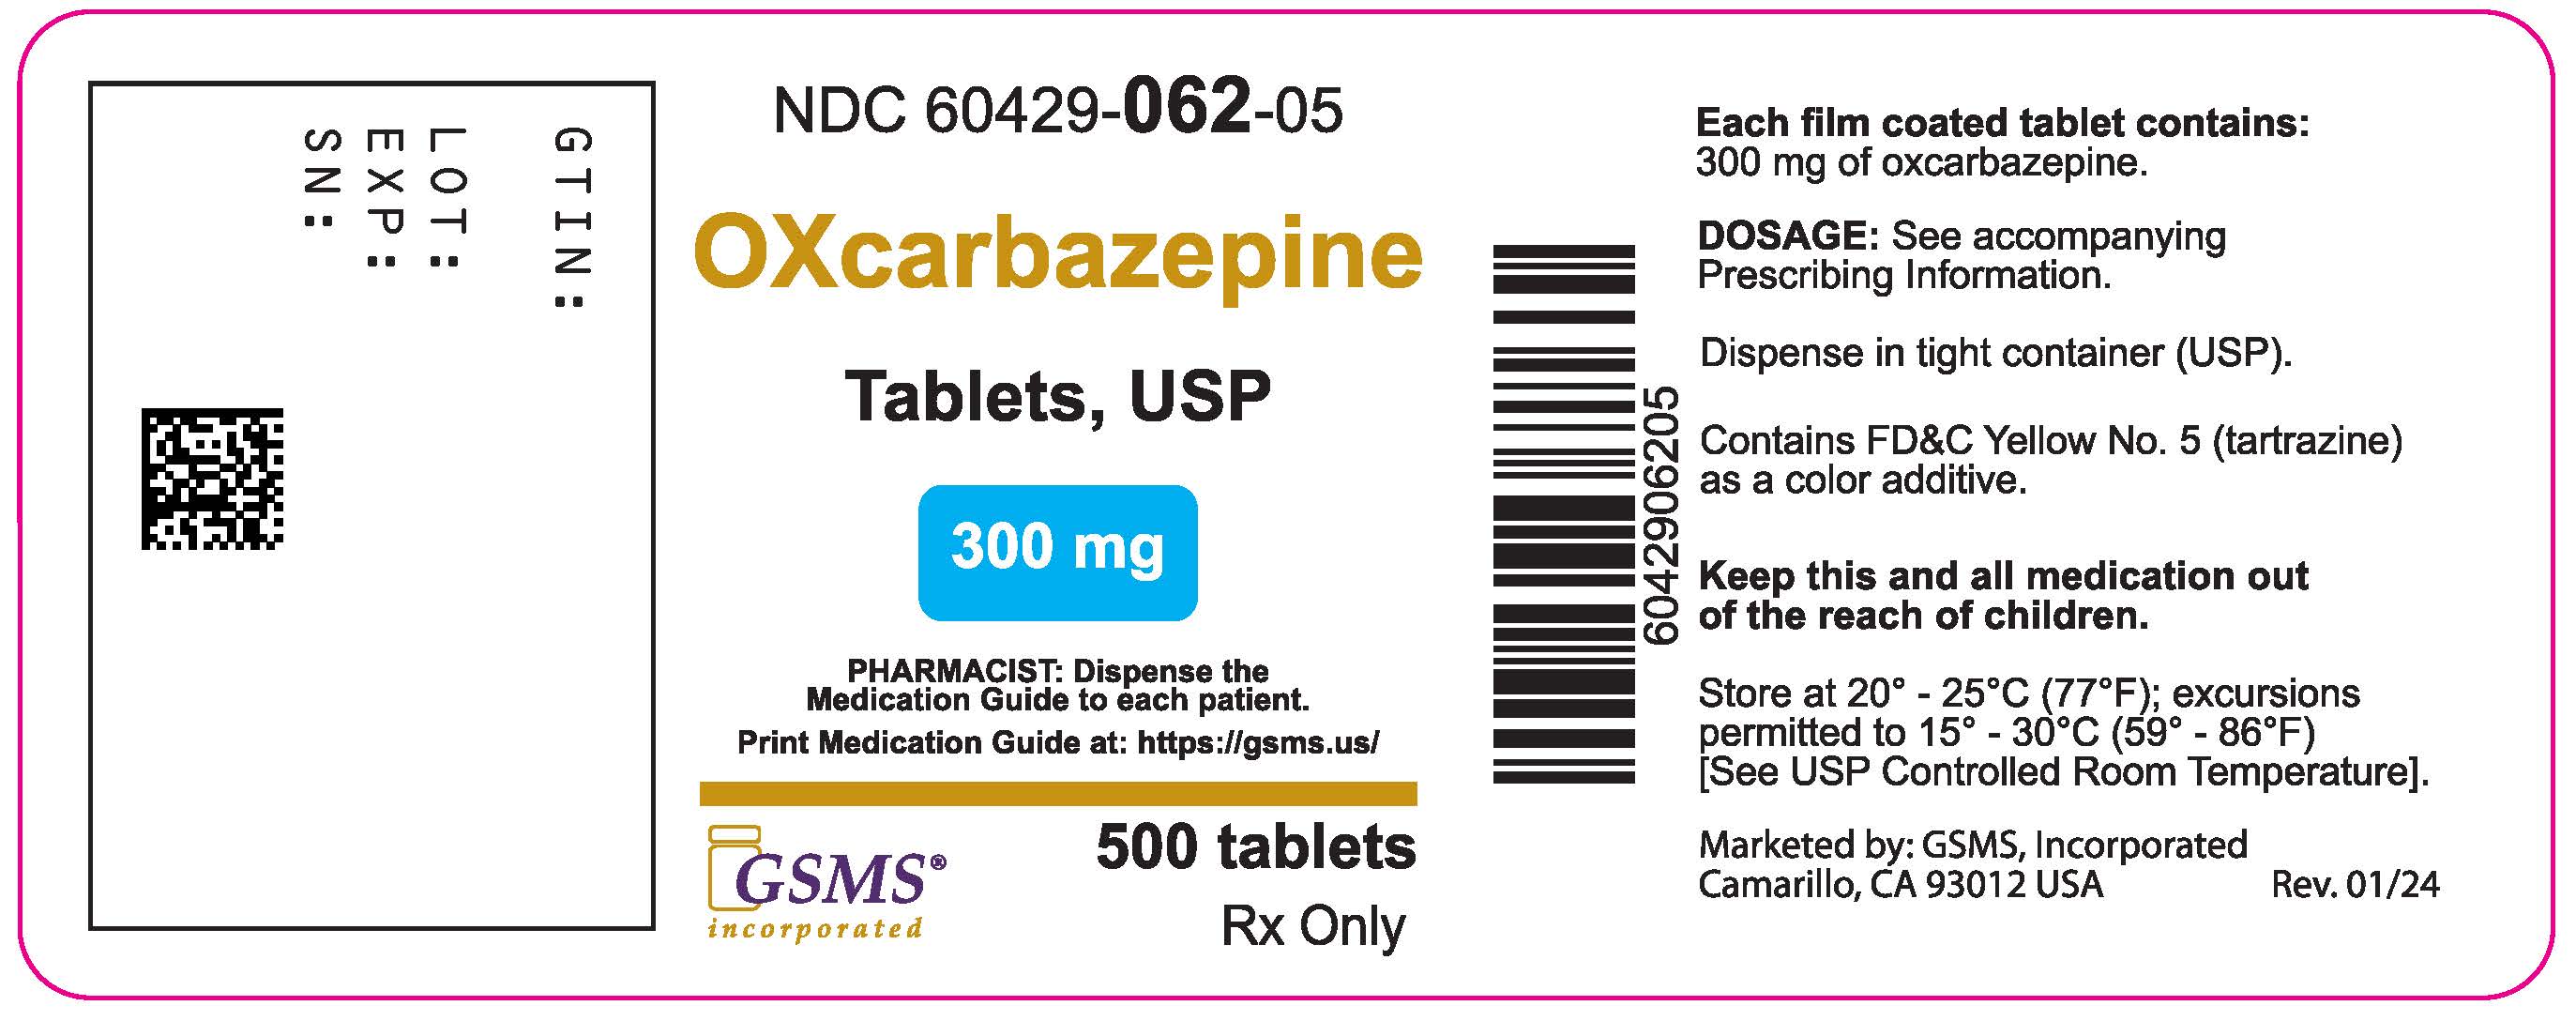 60429-062-05LB- Oxcarbazepine 300 gm - Rev. 0124.jpg